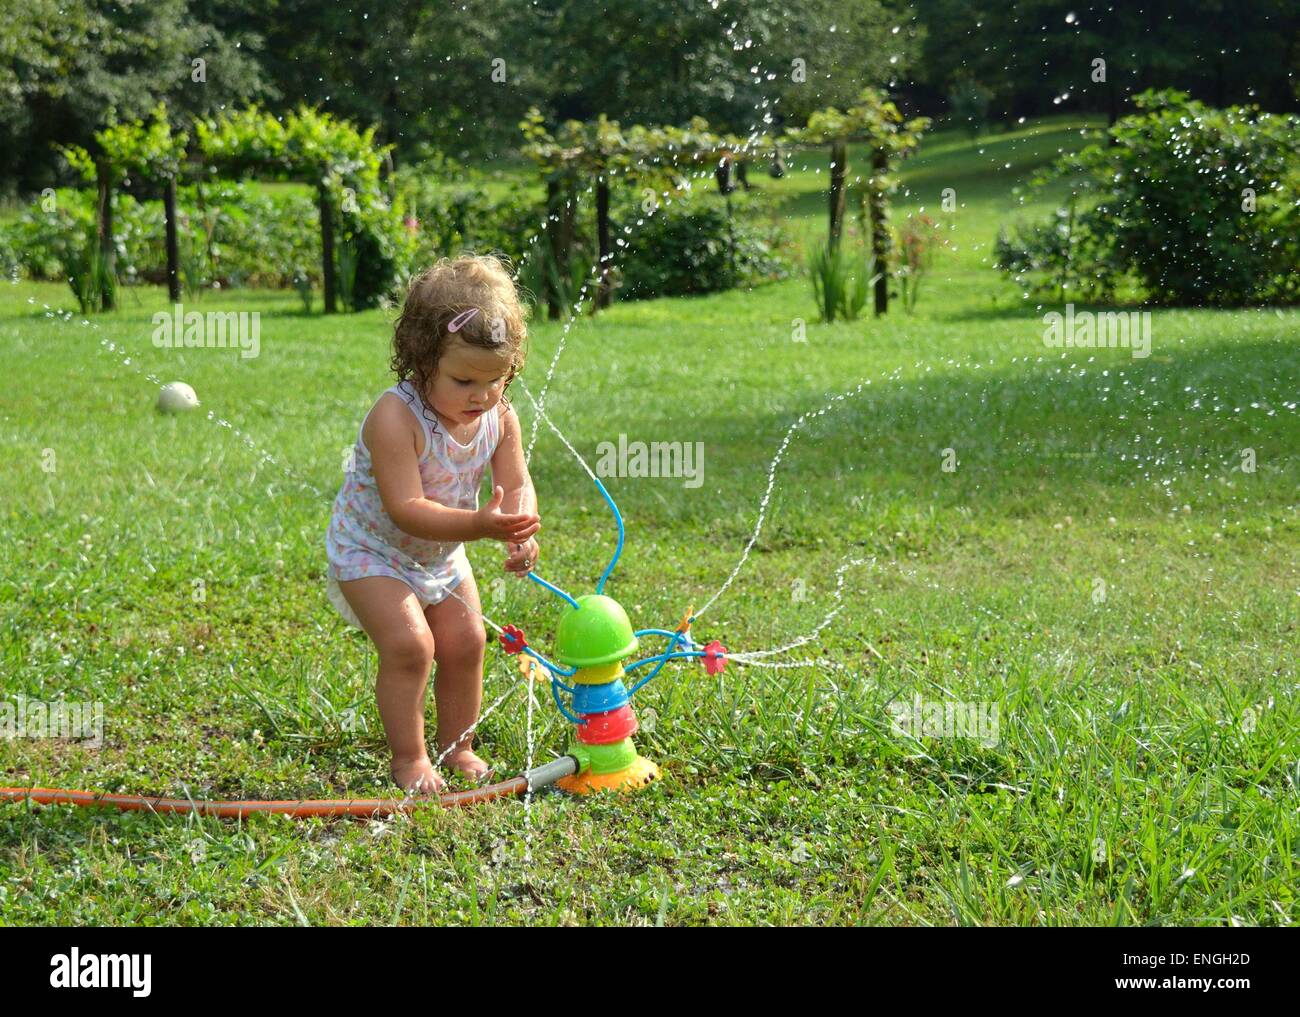 Blondes lockiges Mädchenakt Kleinkind, Kind, spielen mit einem Spielzeug-Sprenger in der Outdoor-Sonne, umgeben von grünen Rasen und Bäumen Stockfoto